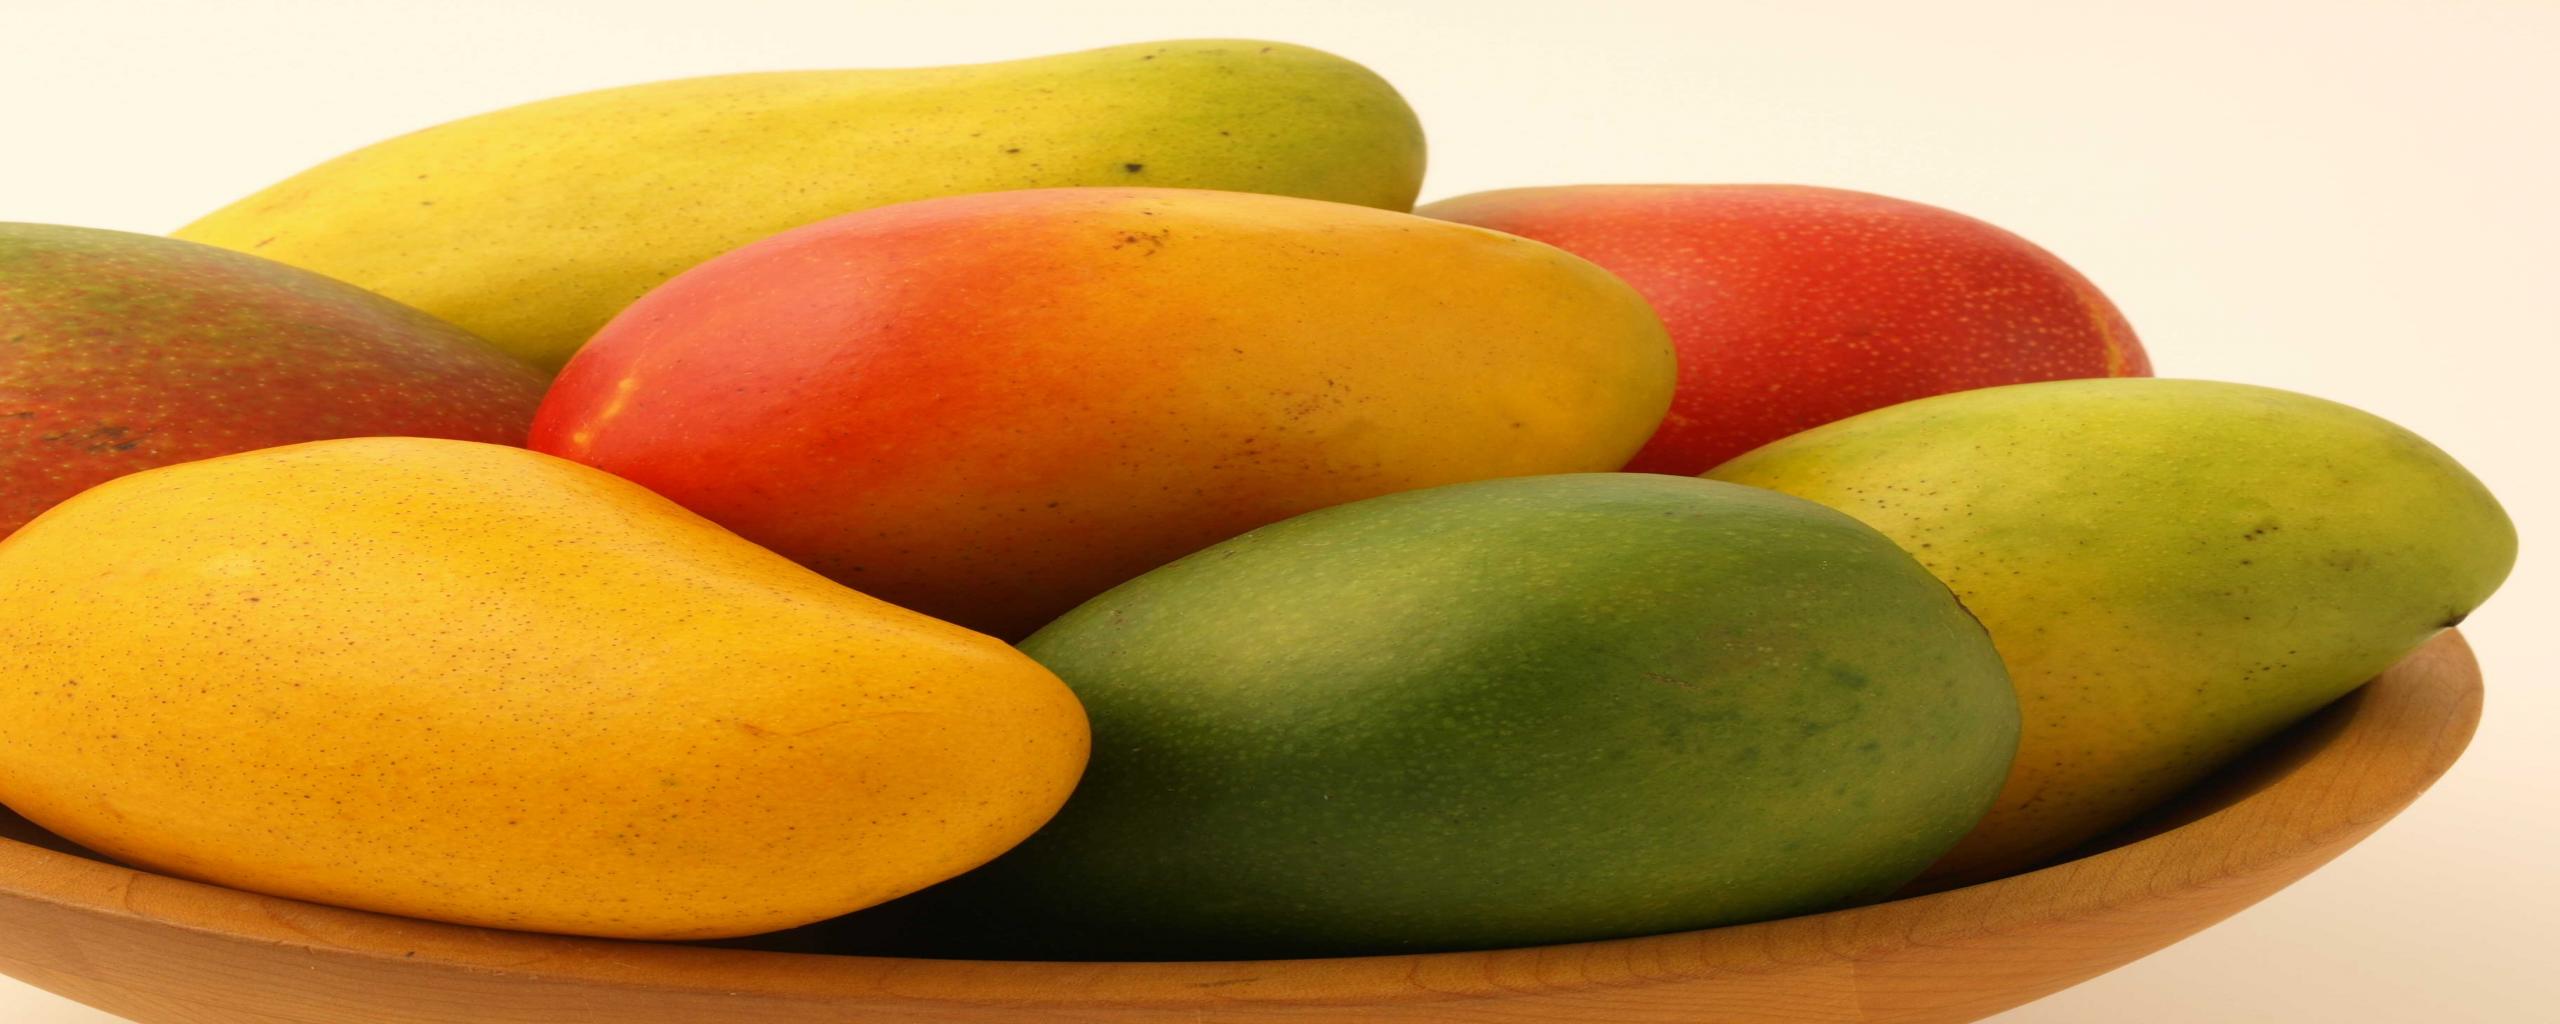 Mango fruit wallpaper free download